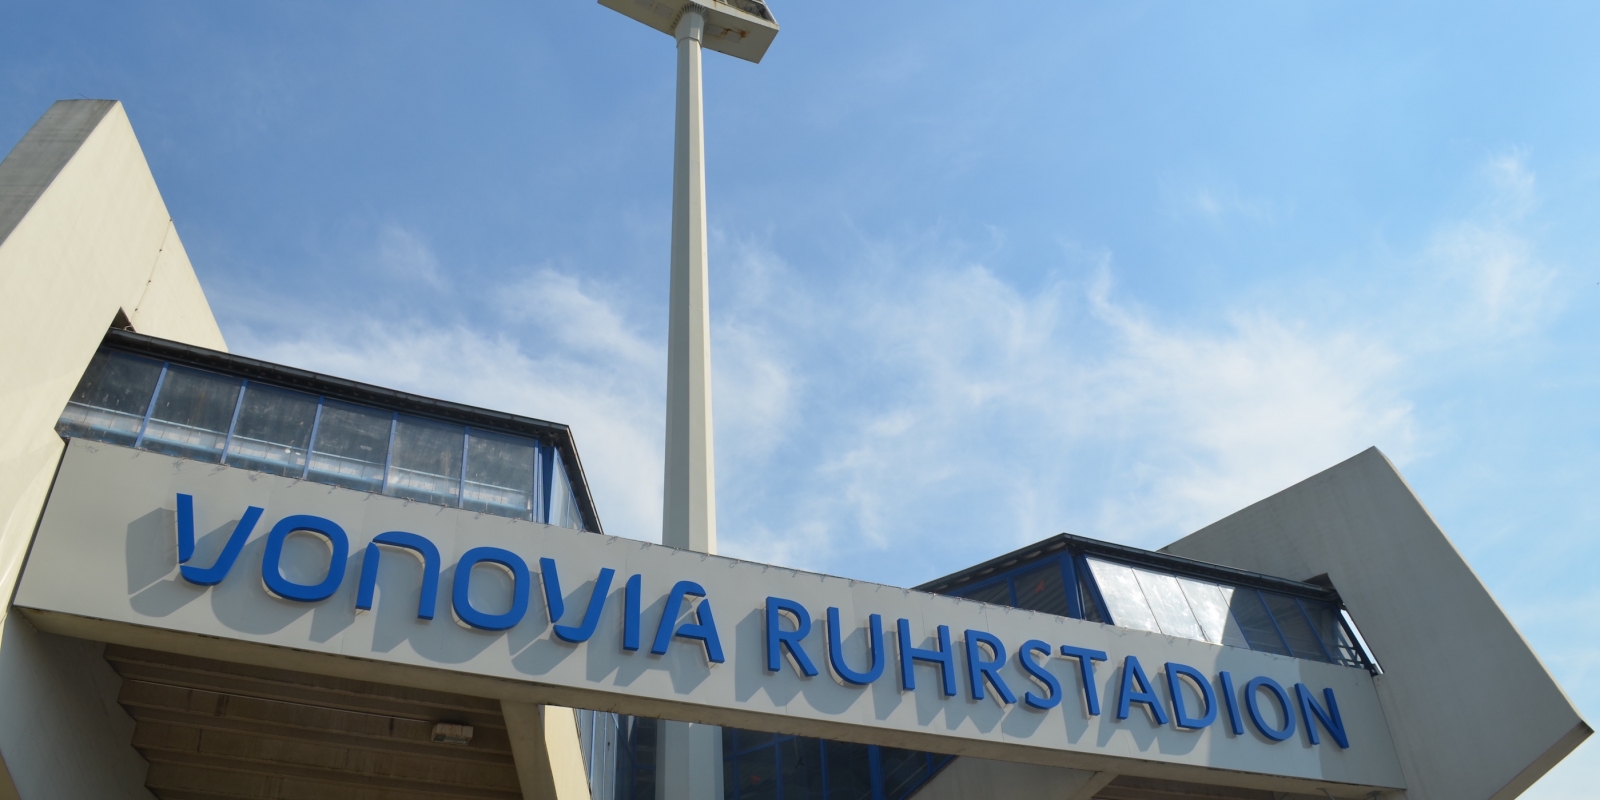 Eingangsbereich des Vonovia Ruhrstadion in Bochum von außen. Der Name "Vonovia Ruhrstadion" prangt in Blau über dem Eingang.